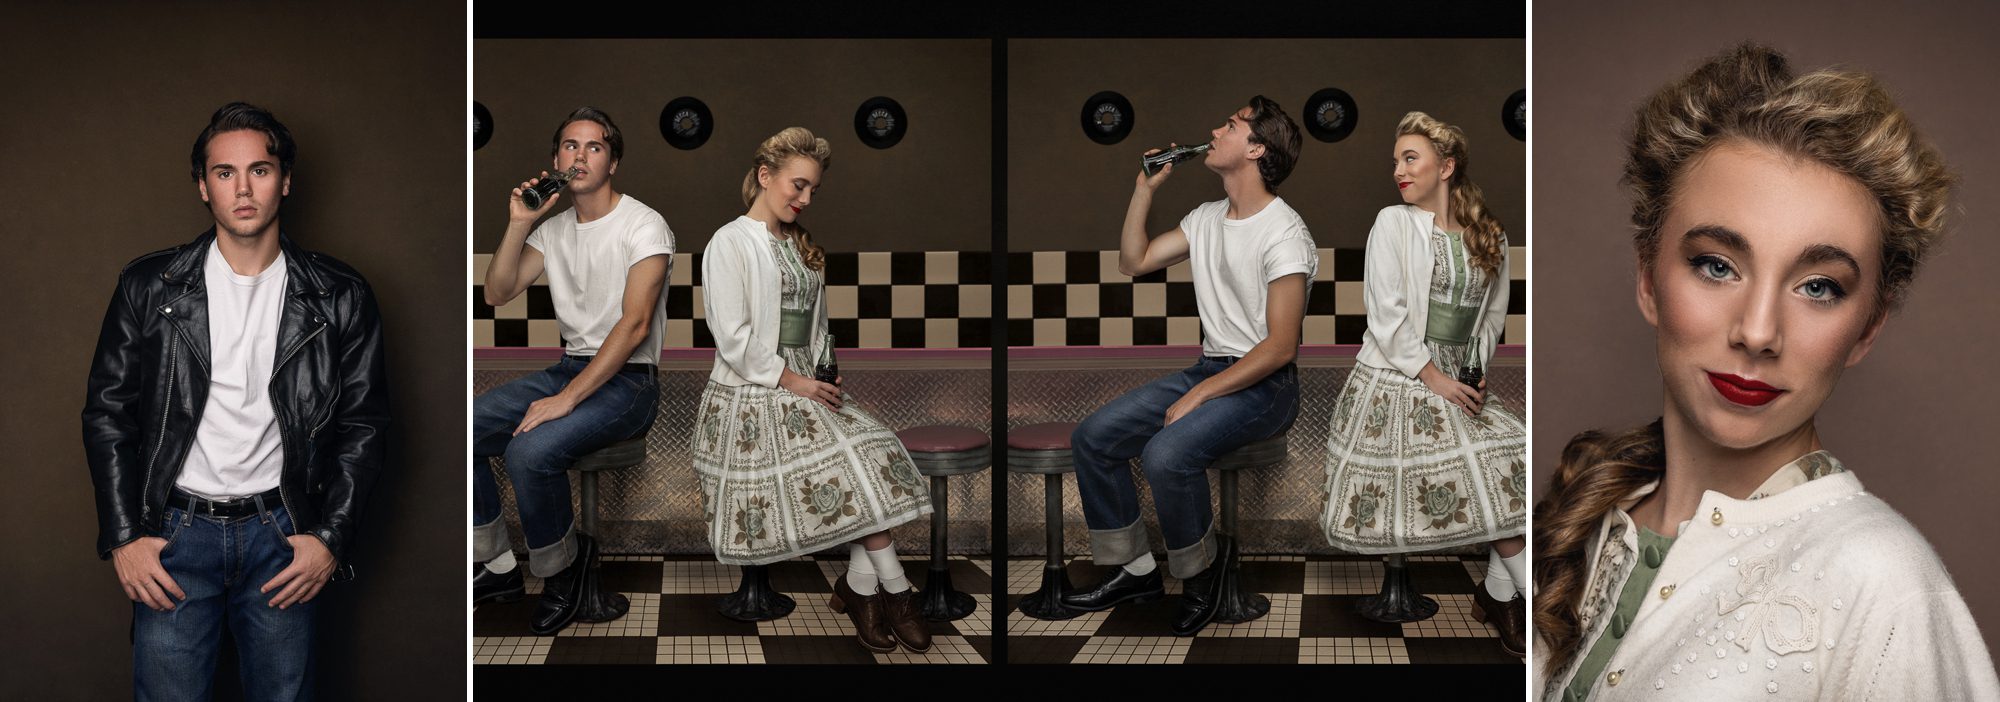 1950s scene girl and boy in diner